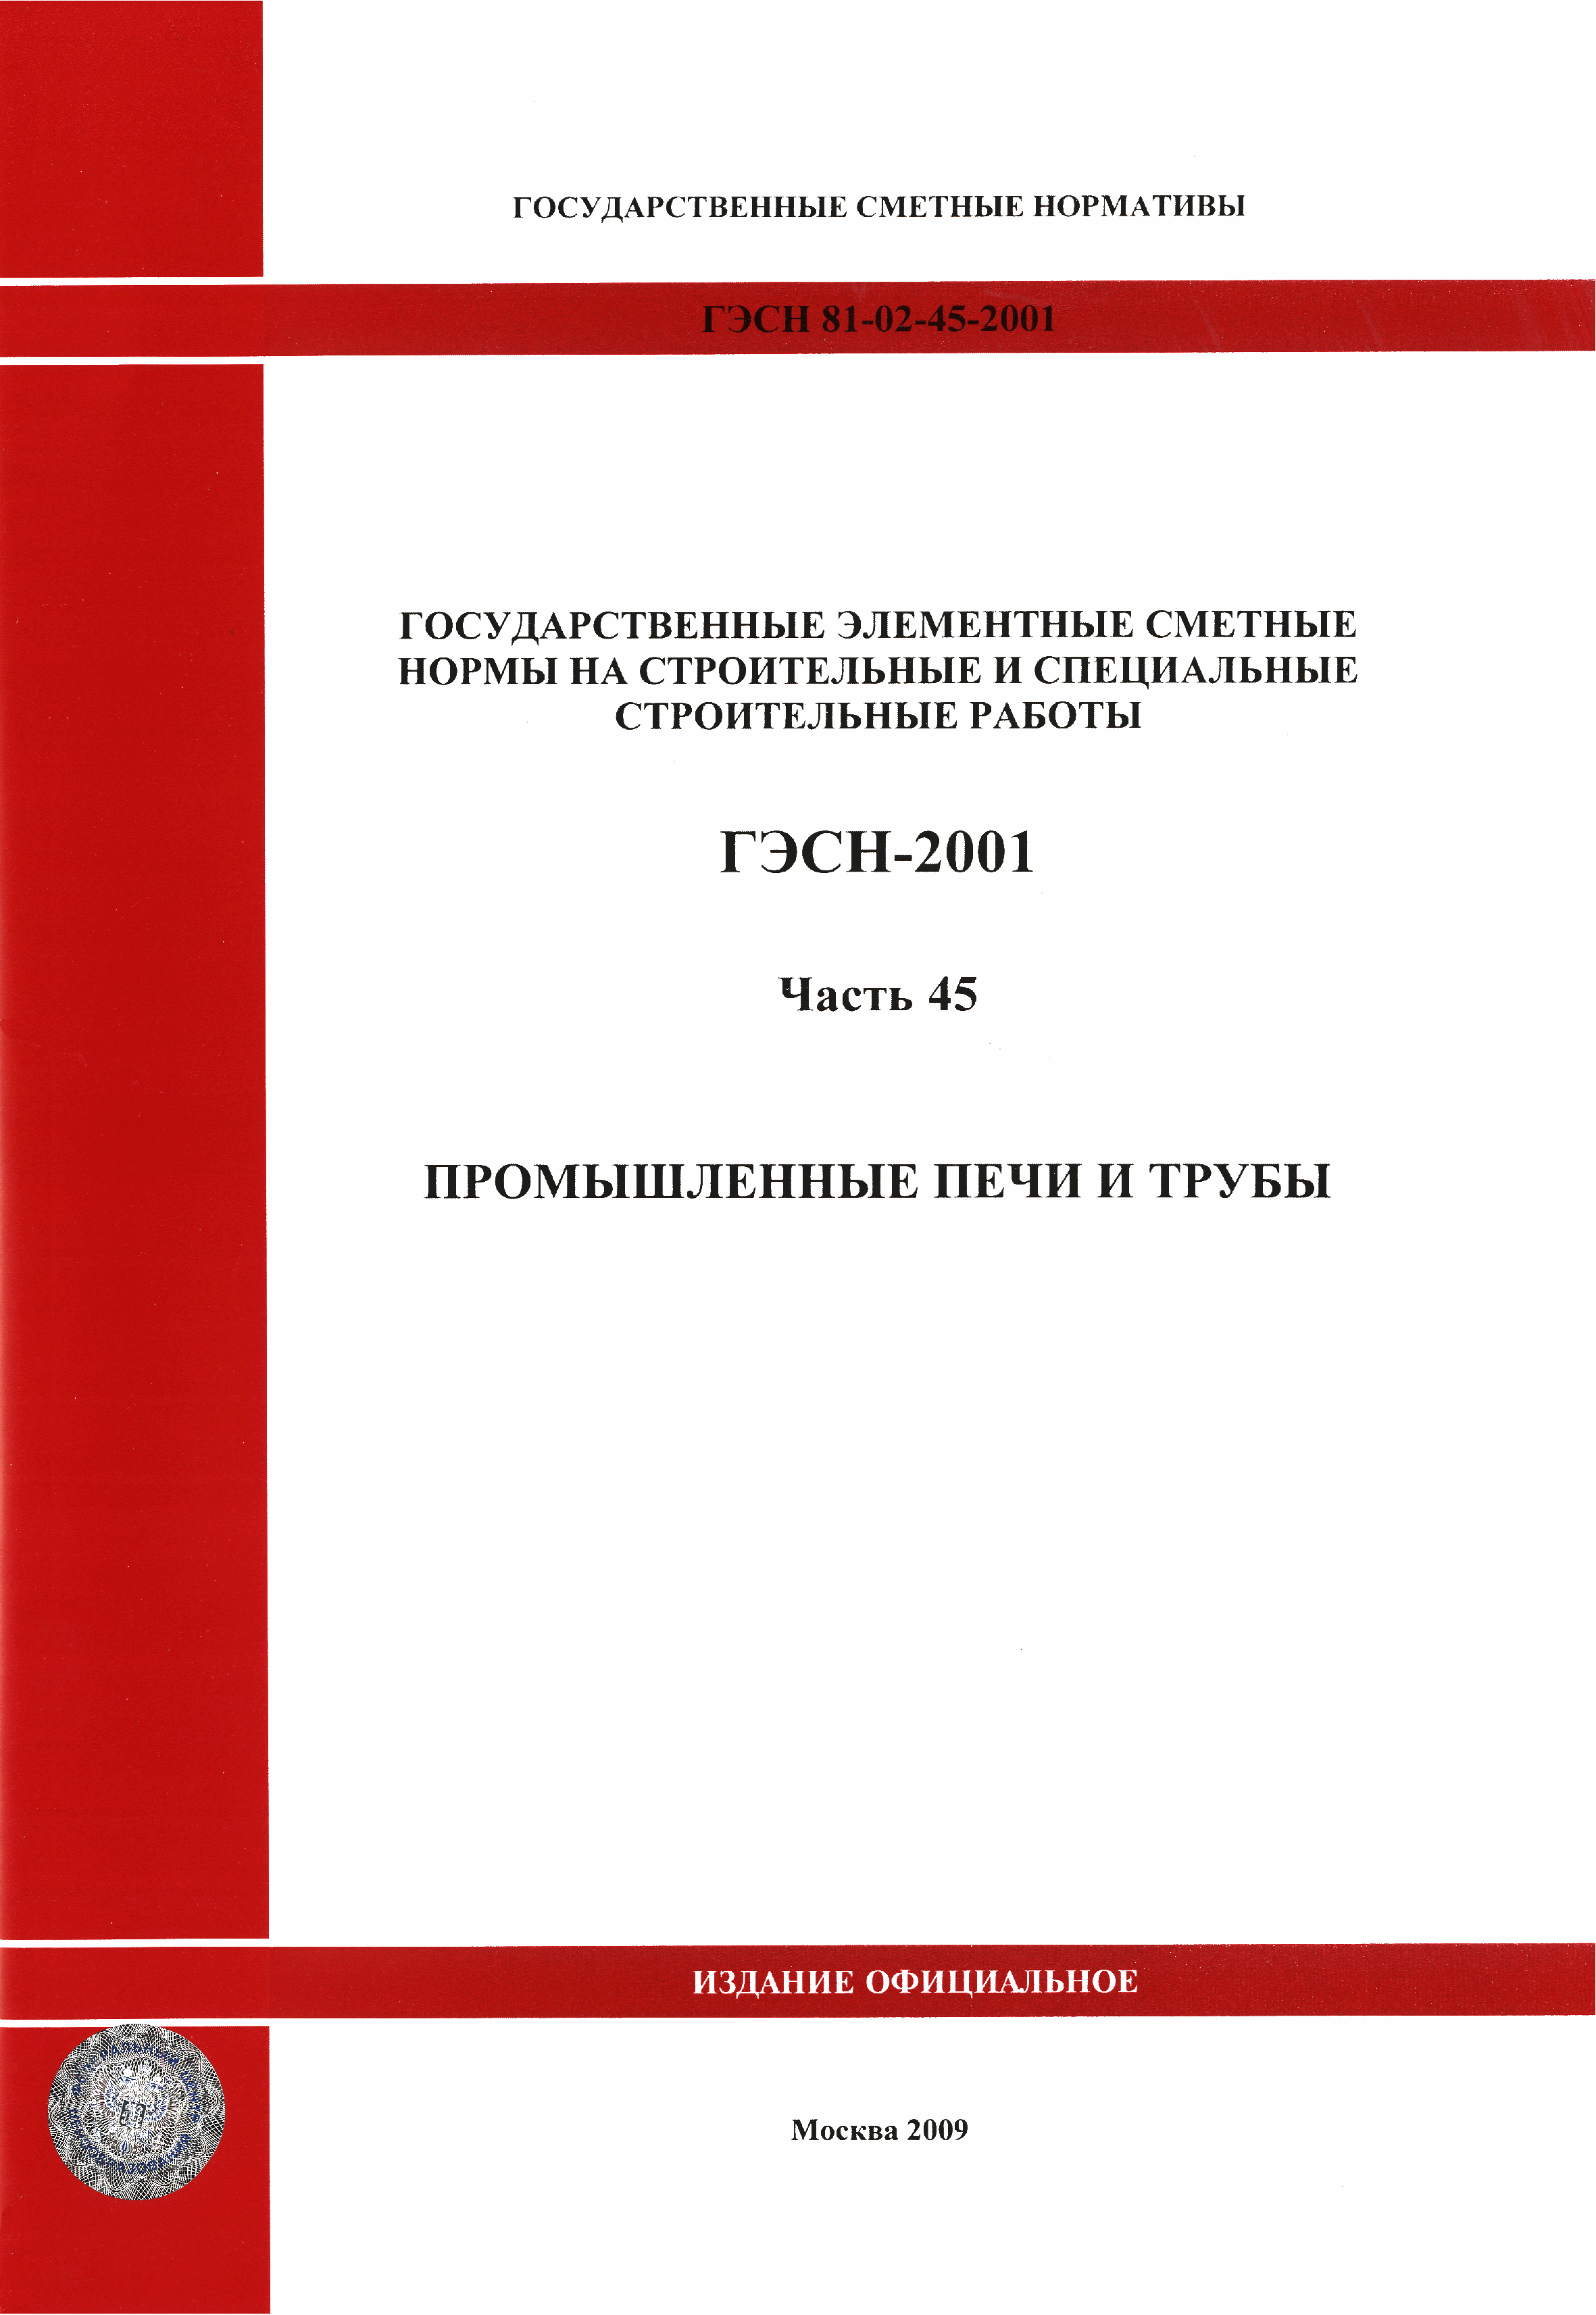 ГЭСН 2001-45